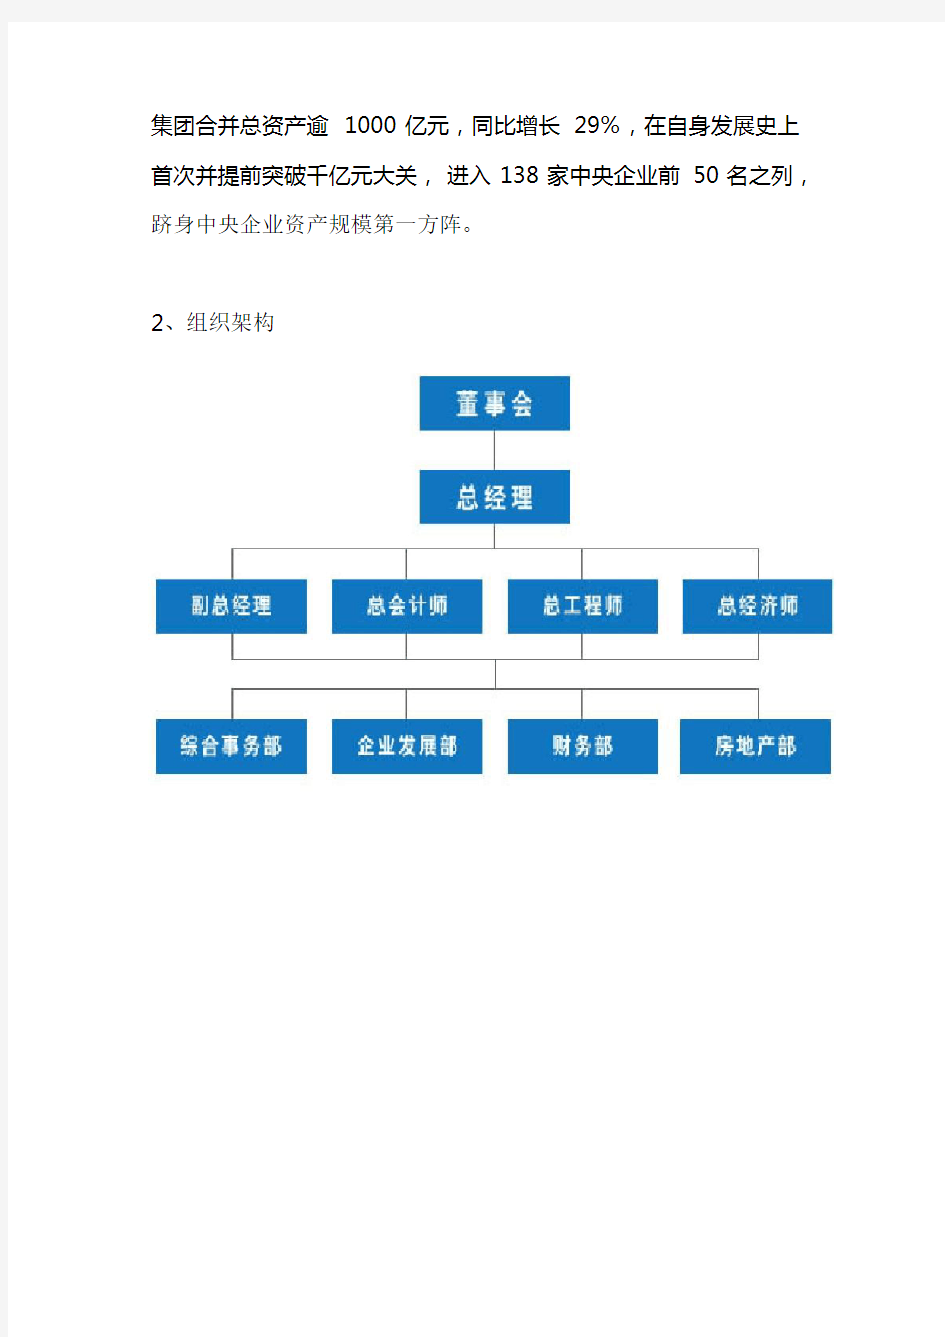 中国部分大型综合性集团简介及组织构架